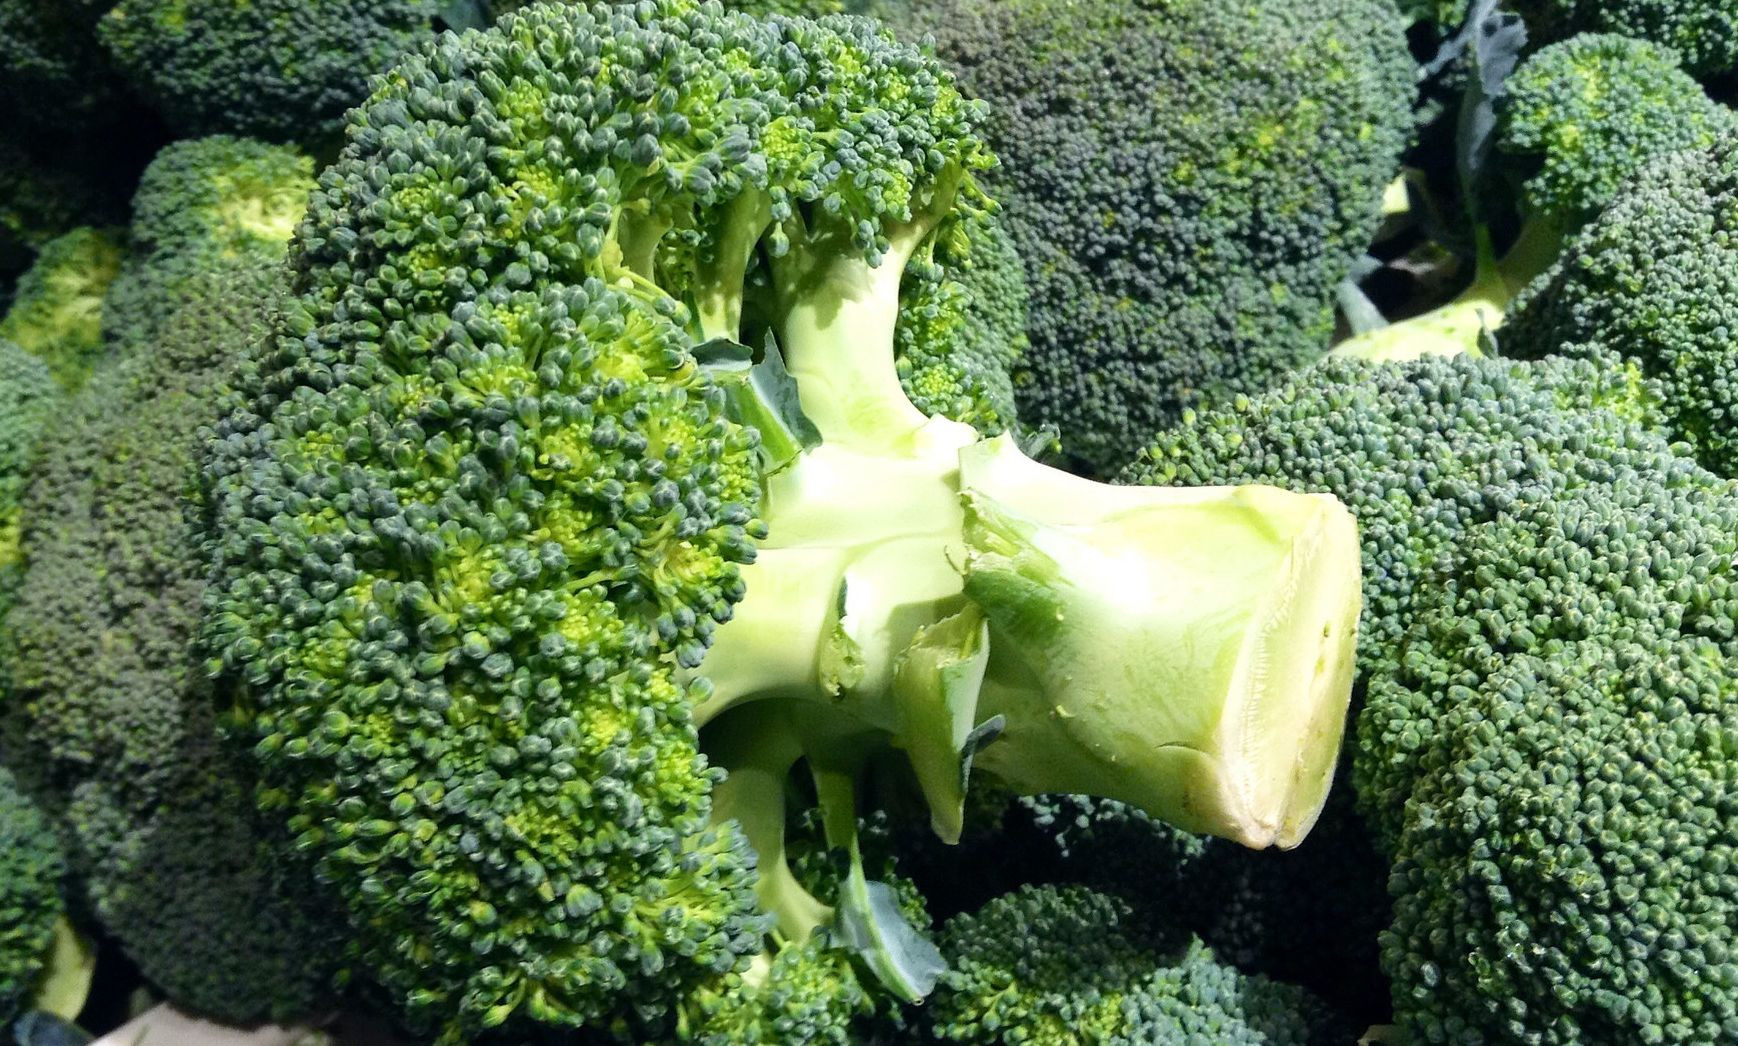 Zelená hlúbová zelenina s ružicovou hlavou, ktorá sa do sveta rozšírila z Talianska, obsahuje priveľa vzácnych a pre dlhovekosť potrebných látok na to, aby sme jej hovorili nie. Pravidelný príjem brokolice pomáha udržiavať v optimálnom stave celý imunitný systém. Menovite: vysoký podiel organických tekutín podporuje činnosť obličiek, vláknina sa podpisuje pod zdravé trávenie a draslík a železo sa starajú o bezchybnú činnosť srdca a stav krvi. A jednou z najväčších praktických výhod brokolice je jej pestré využitie v kuchyni. Môžete si z nej pripraviť polievku, zapiecť ju so zemiakmi, zamiešať do cestovín, použiť ako prílohu alebo hlavné jedlo a vždy budete spokojní. 